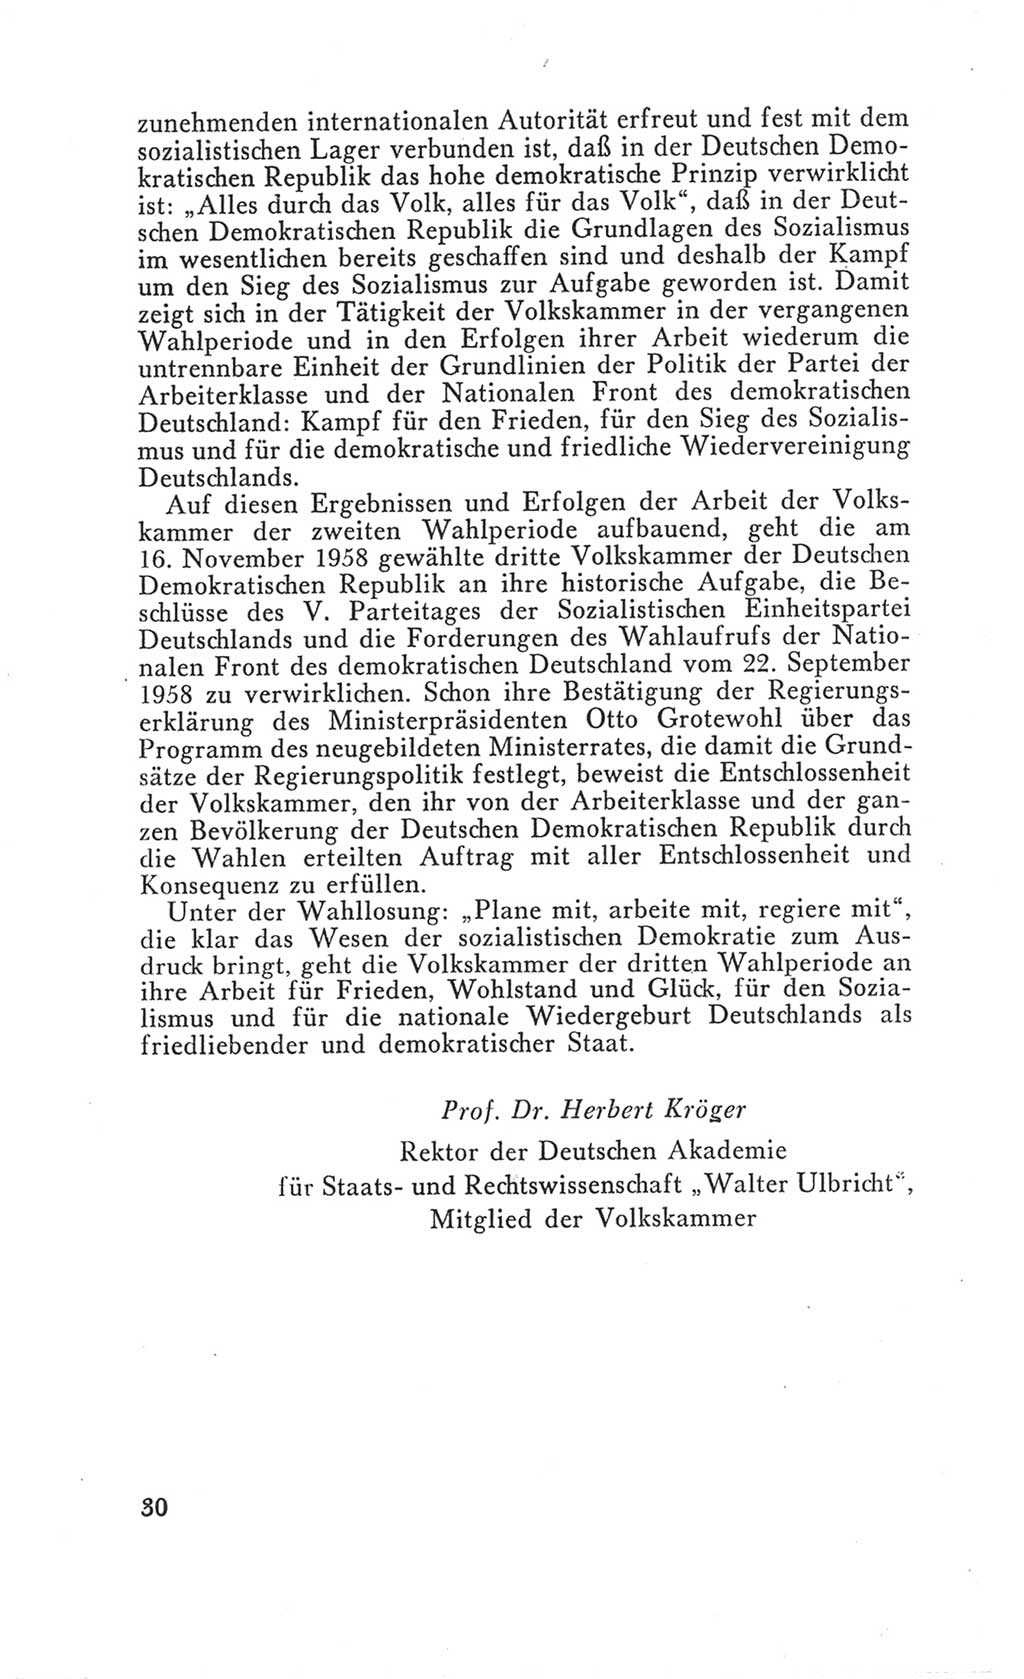 Handbuch der Volkskammer (VK) der Deutschen Demokratischen Republik (DDR), 3. Wahlperiode 1958-1963, Seite 30 (Hdb. VK. DDR 3. WP. 1958-1963, S. 30)